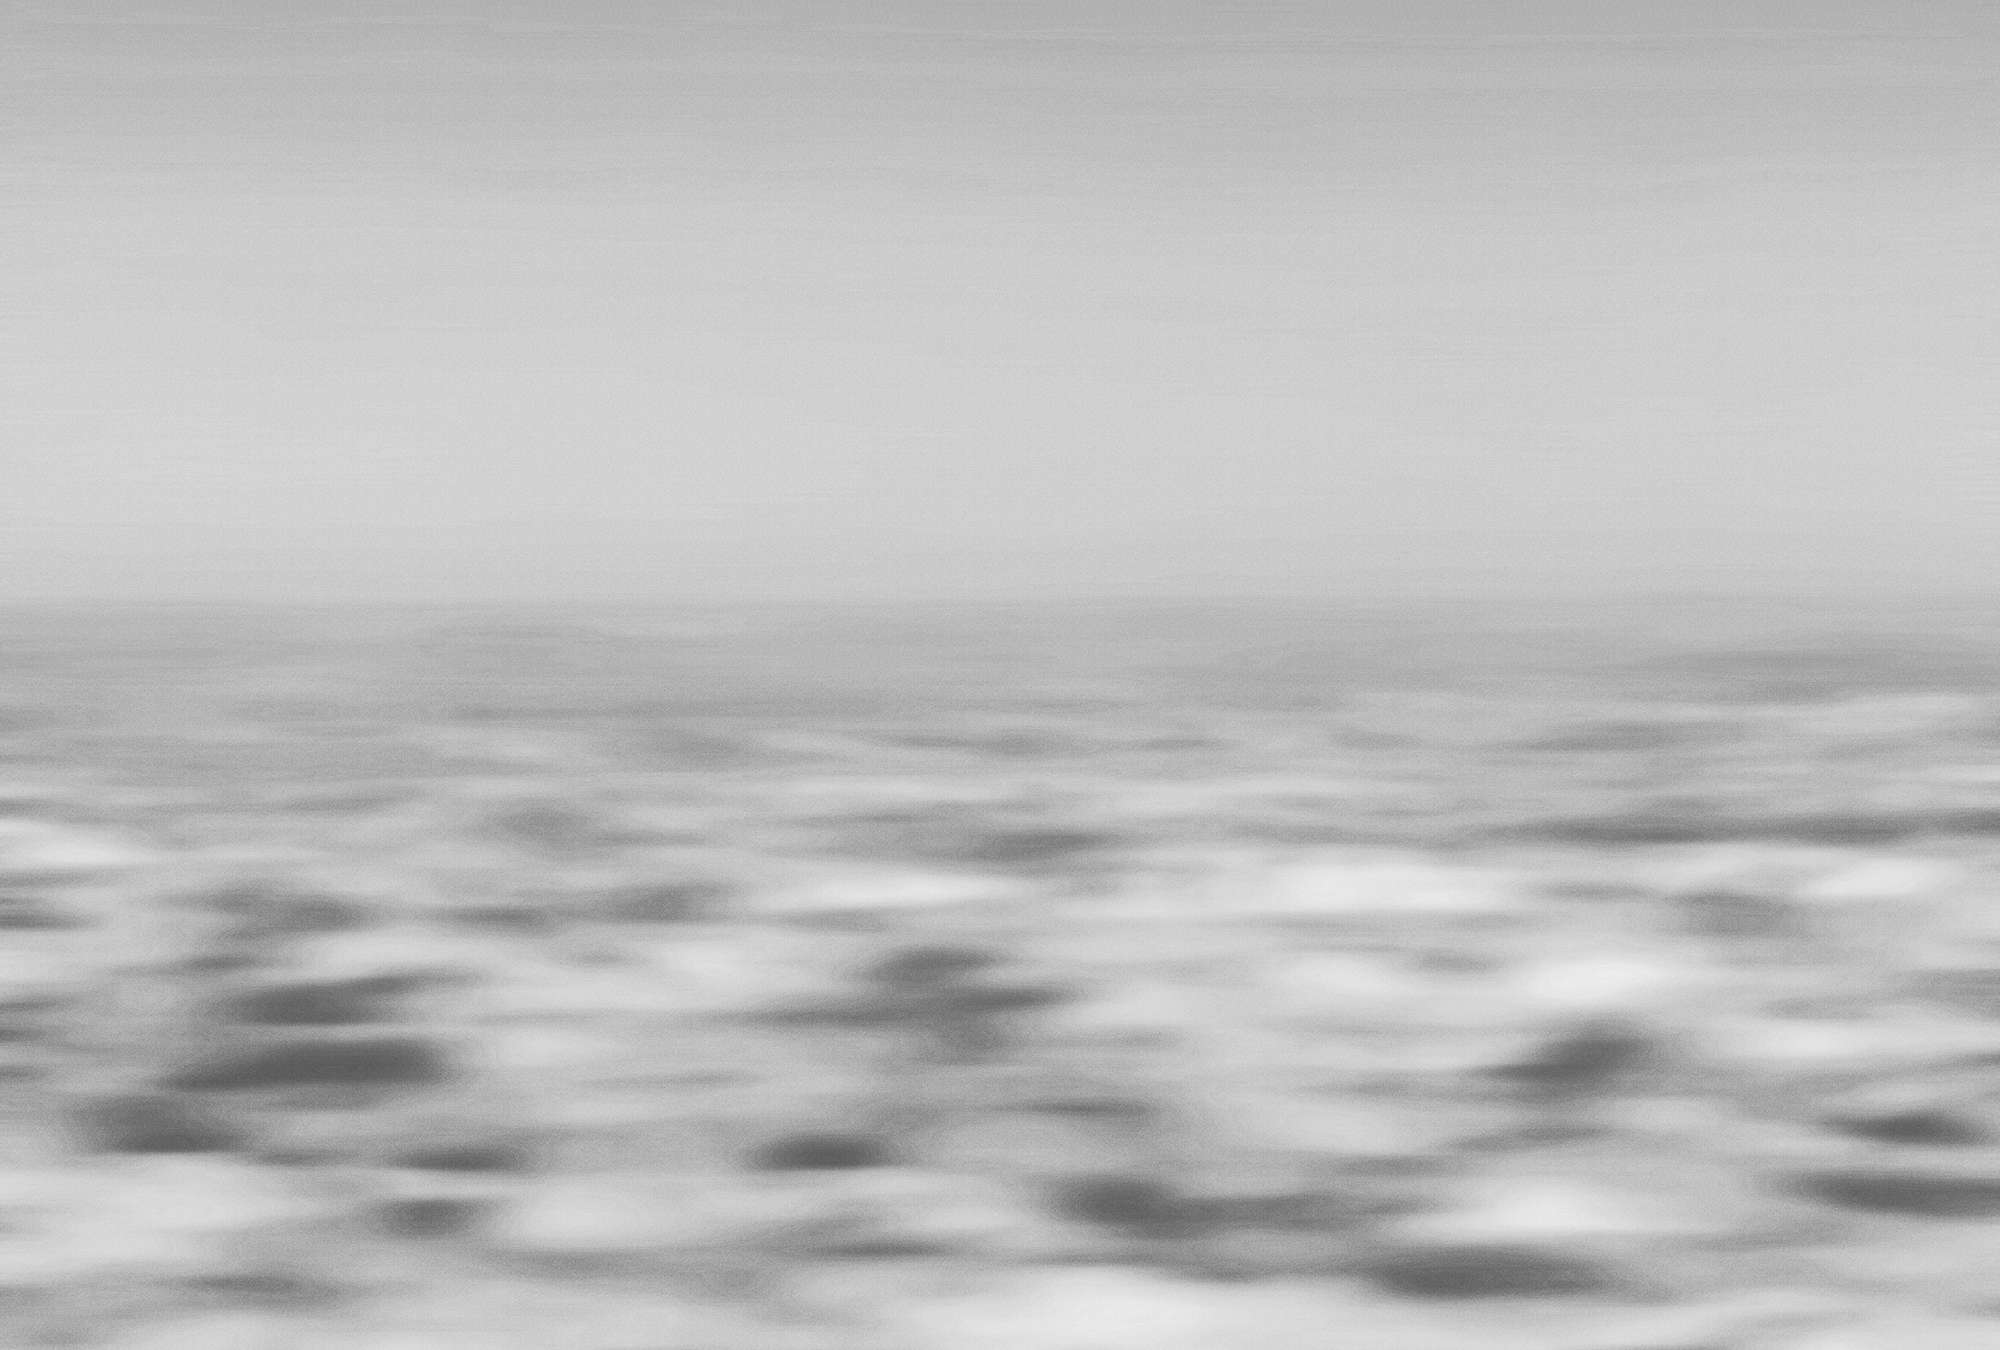             Mural marítimo y abstracto, mar y olas - gris, blanco
        